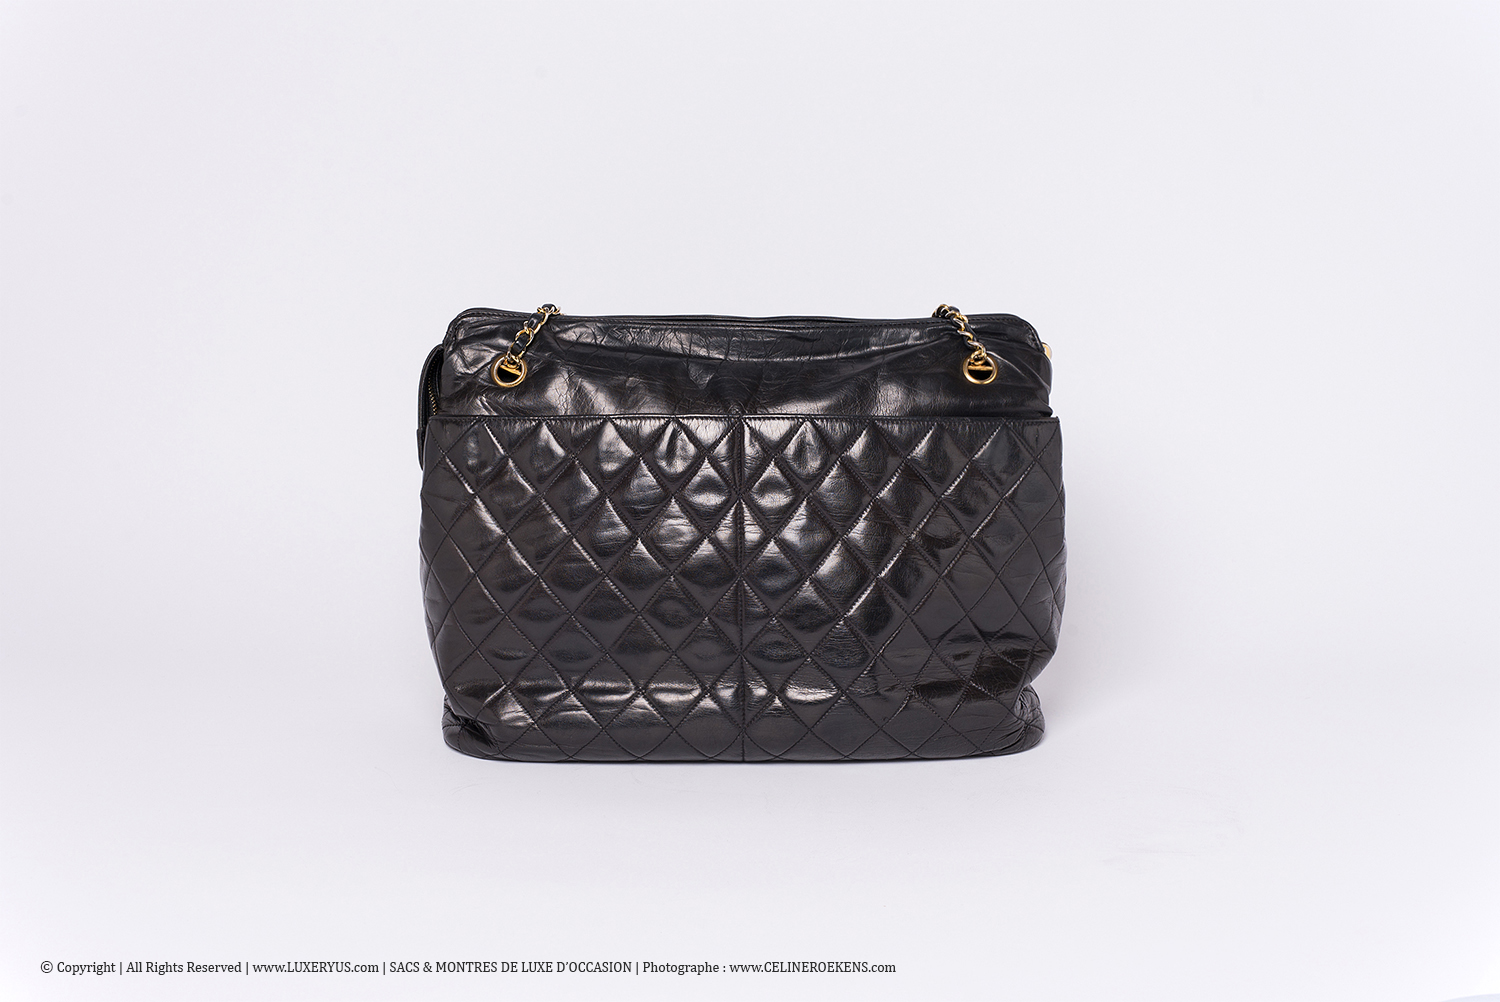 Sac Chanel Grand Cabas Authentique d'occasion Matelassé Vintage en cuir noir et bijouterie dorée